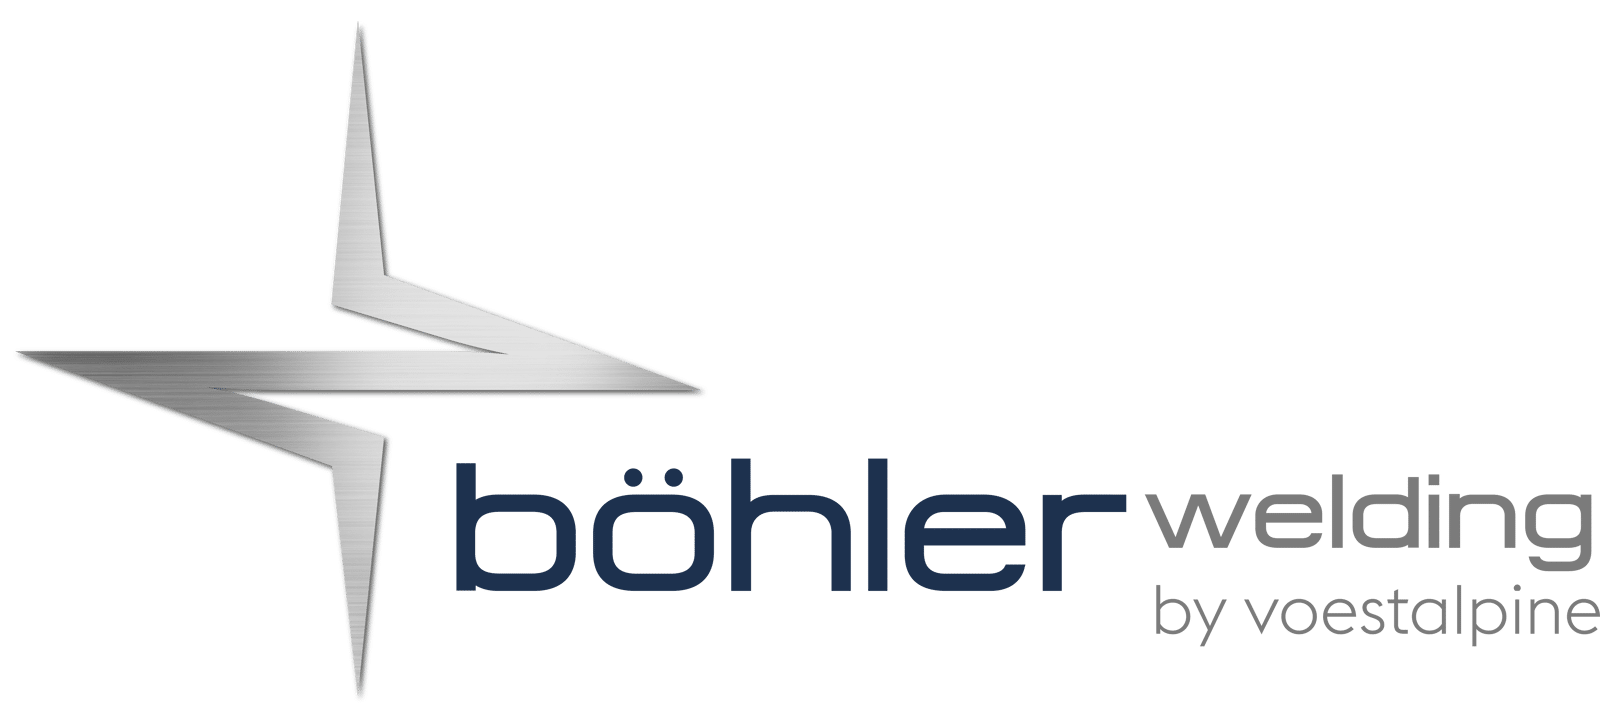 voestalpine Böhler Welding - Kategorie produktů